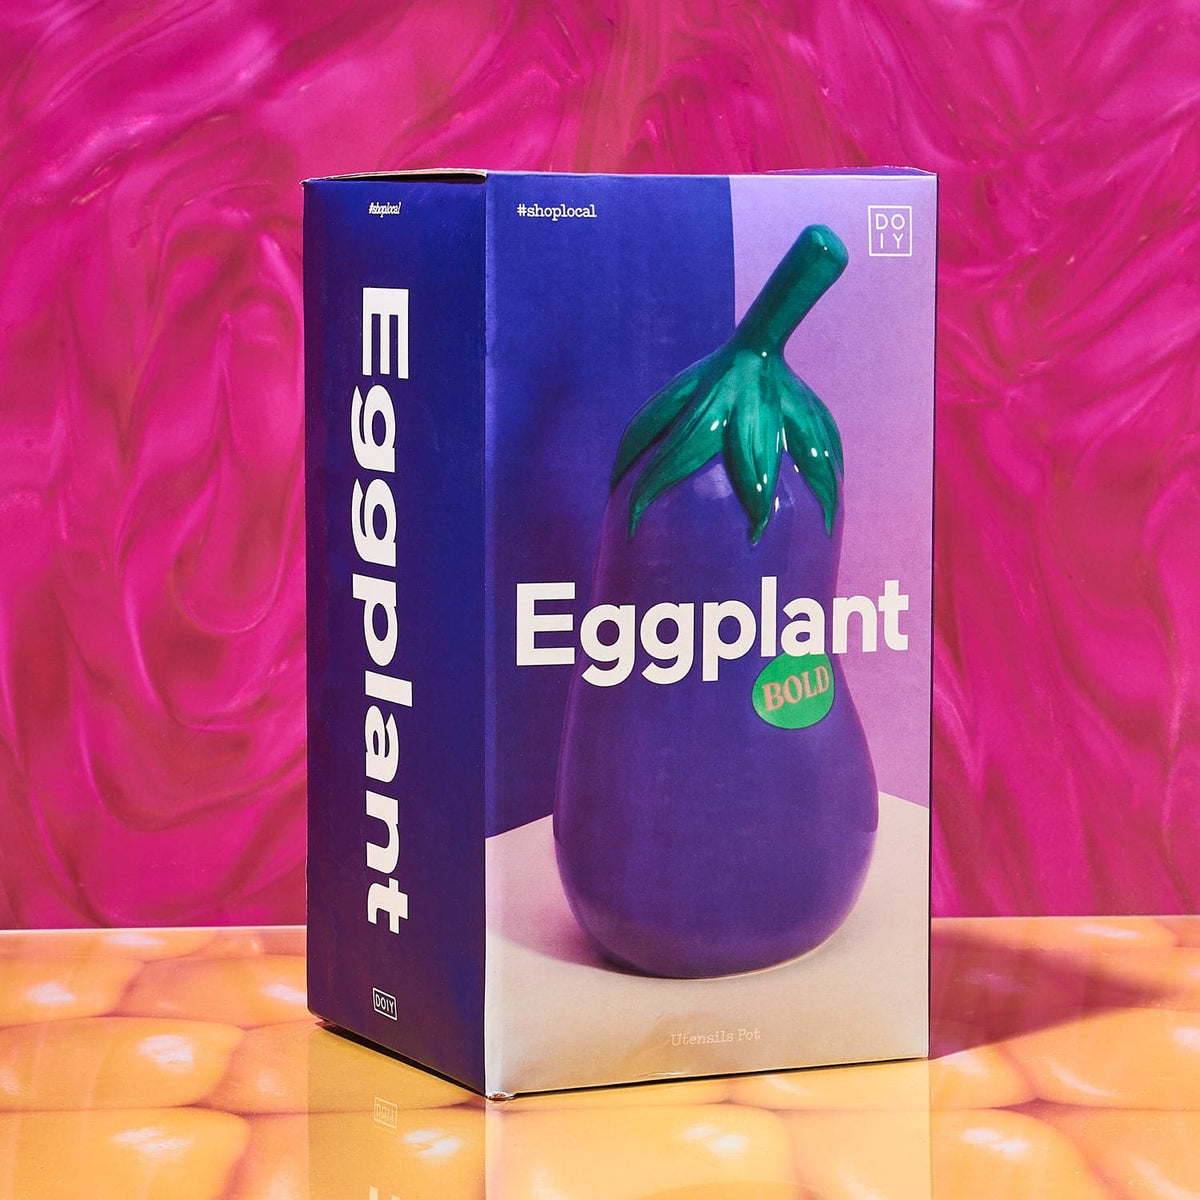 Eggplant Vase + Utensil Pot Doiy - Eggplant - Fake Food